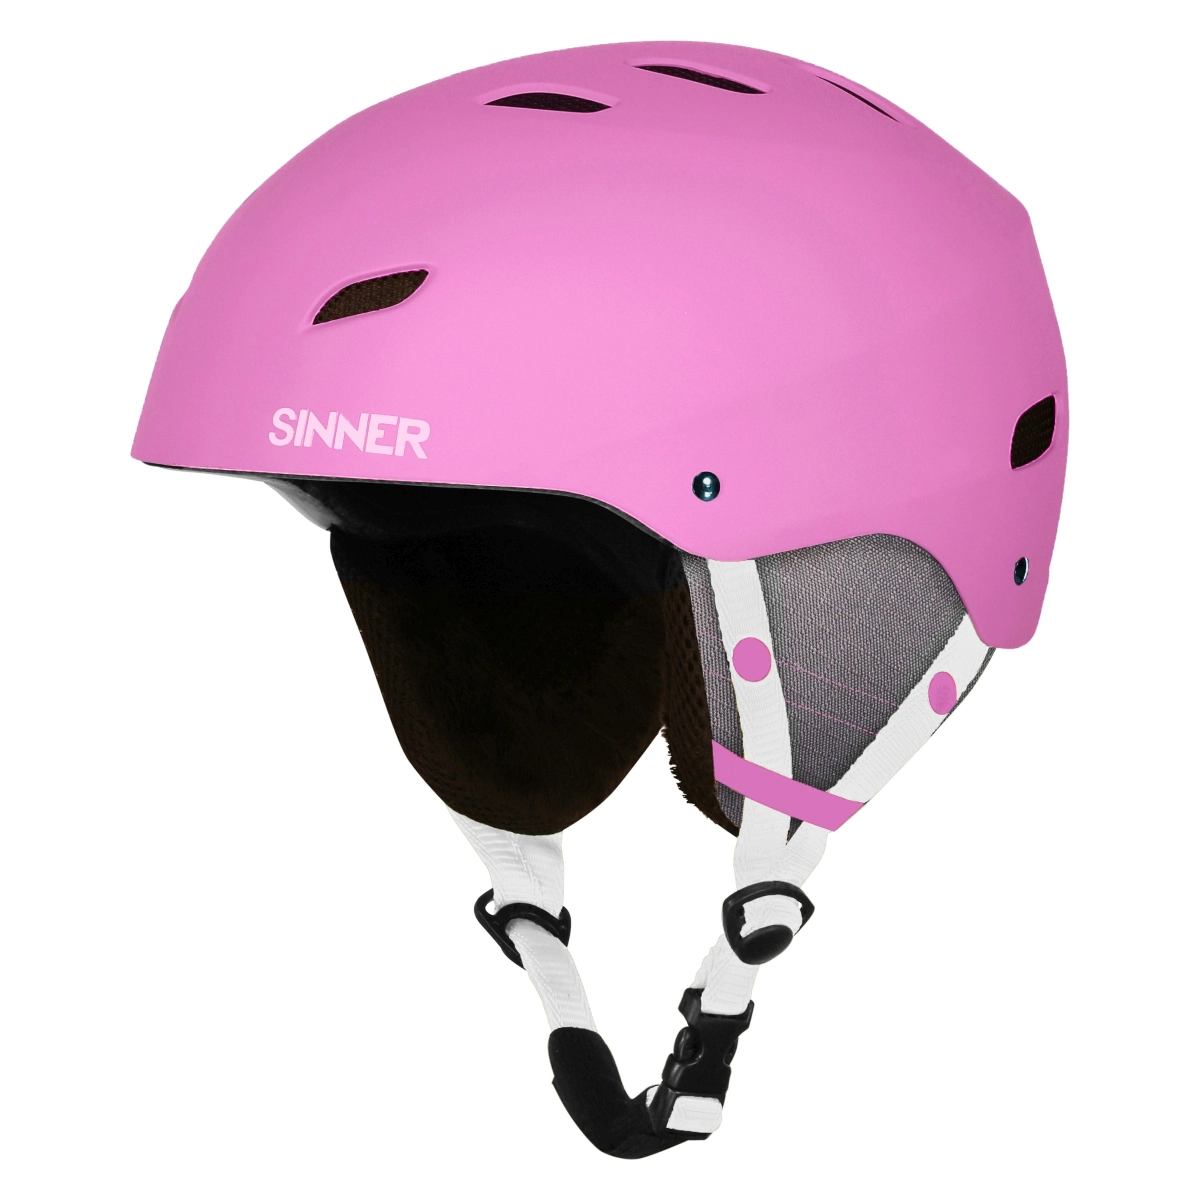 uitdrukken Watt Validatie Sinner Bingham Ski Helm Junior - Helmen - Accessoires - Wintersport -  Intersport van den Broek / Biggelaar